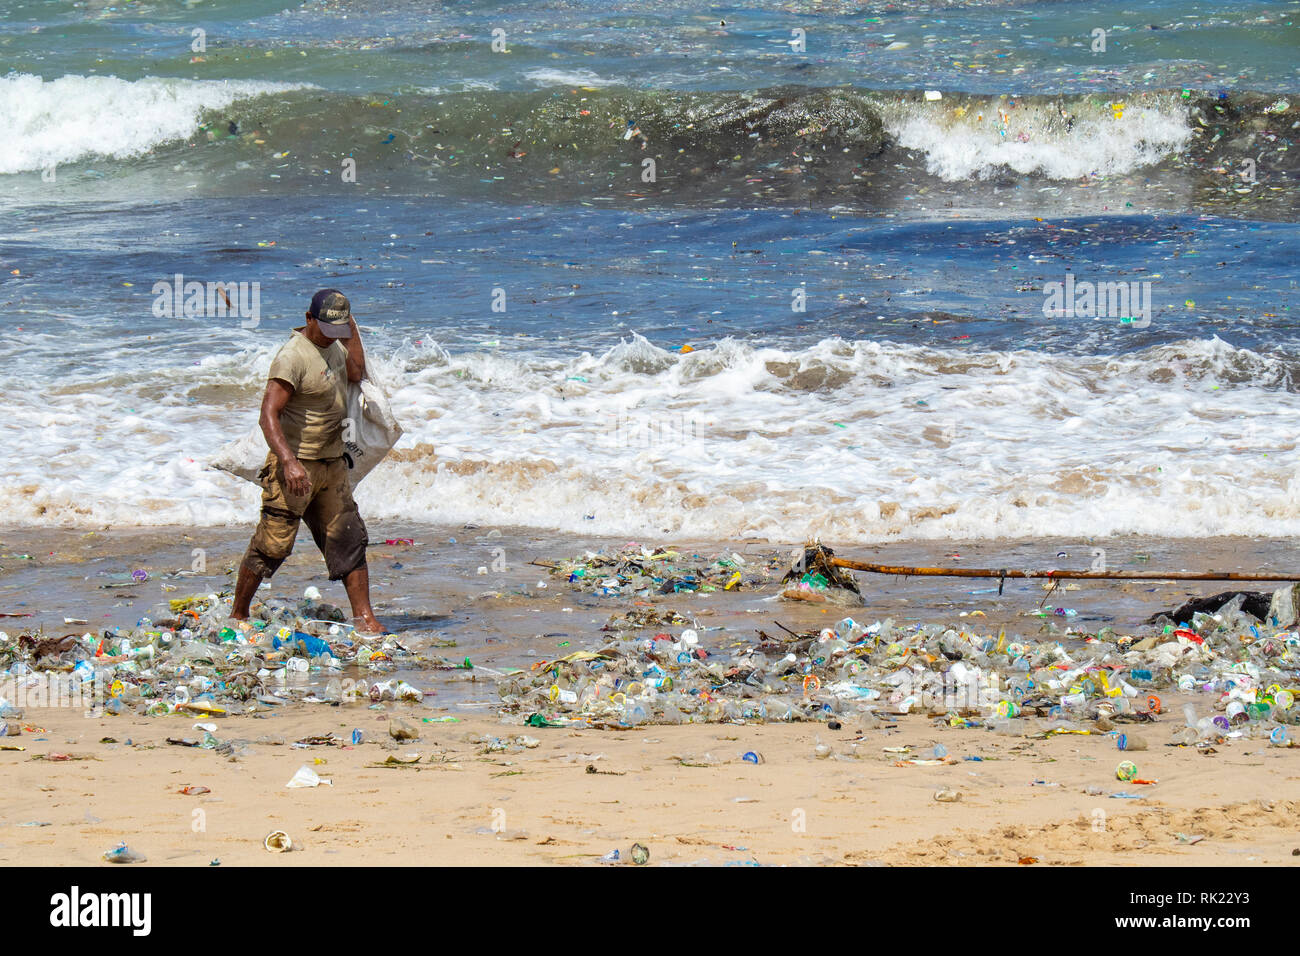 Umweltverschmutzung, einsame Mann herauf Kunststoff Flaschen, Becher, Strohhalme und sonstigem Abfall bis auf den Strand gespült an der Jimbaran Bay, Bali Indonesien.. Stockfoto